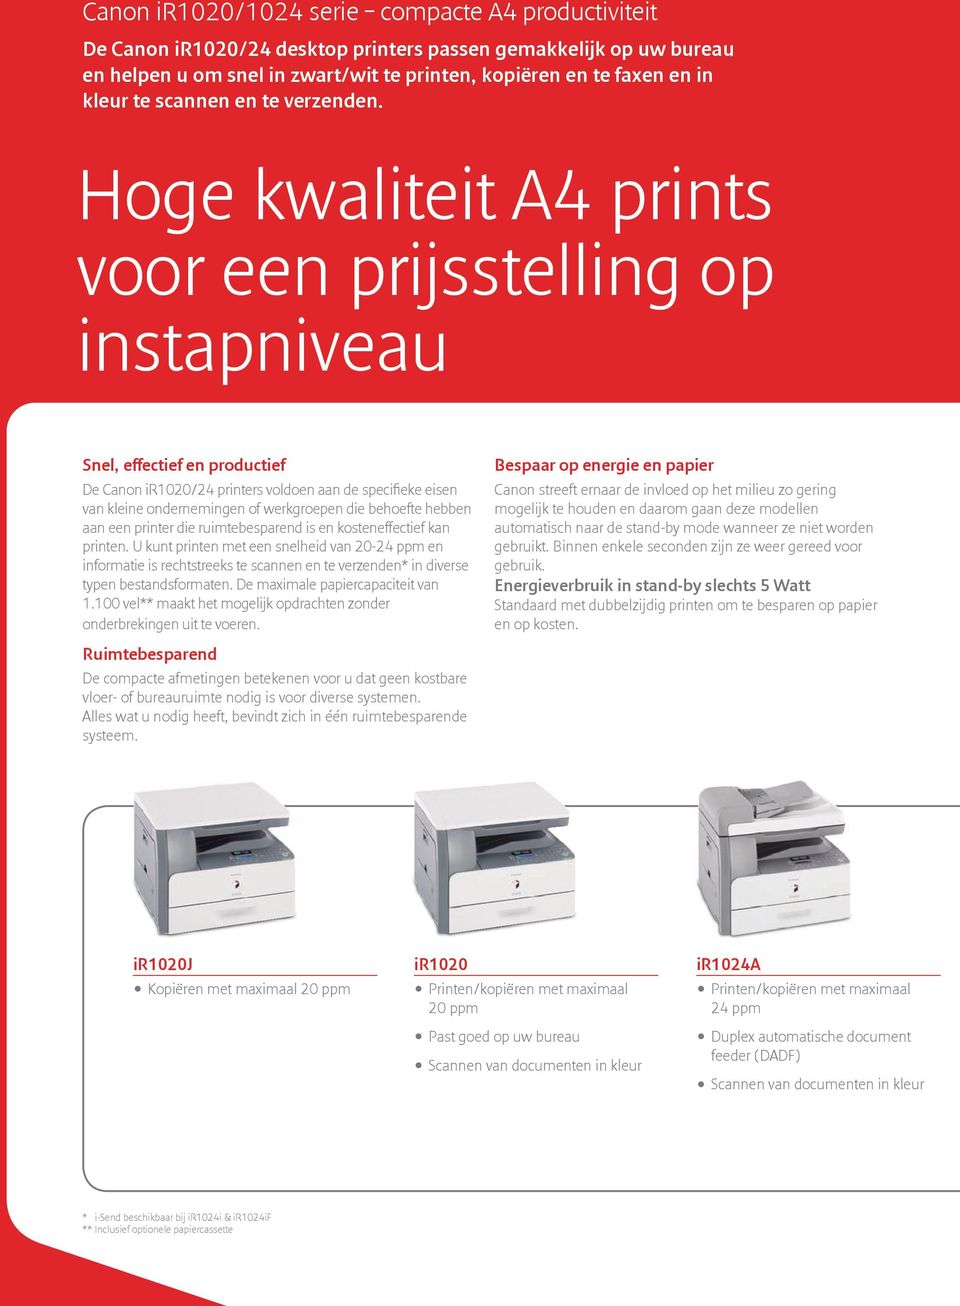 Hoge kwaliteit A4 prints voor een prijsstelling op instapniveau Snel, effectief en productief De Canon ir1020/24 printers voldoen aan de specifieke eisen van kleine ondernemingen of werkgroepen die